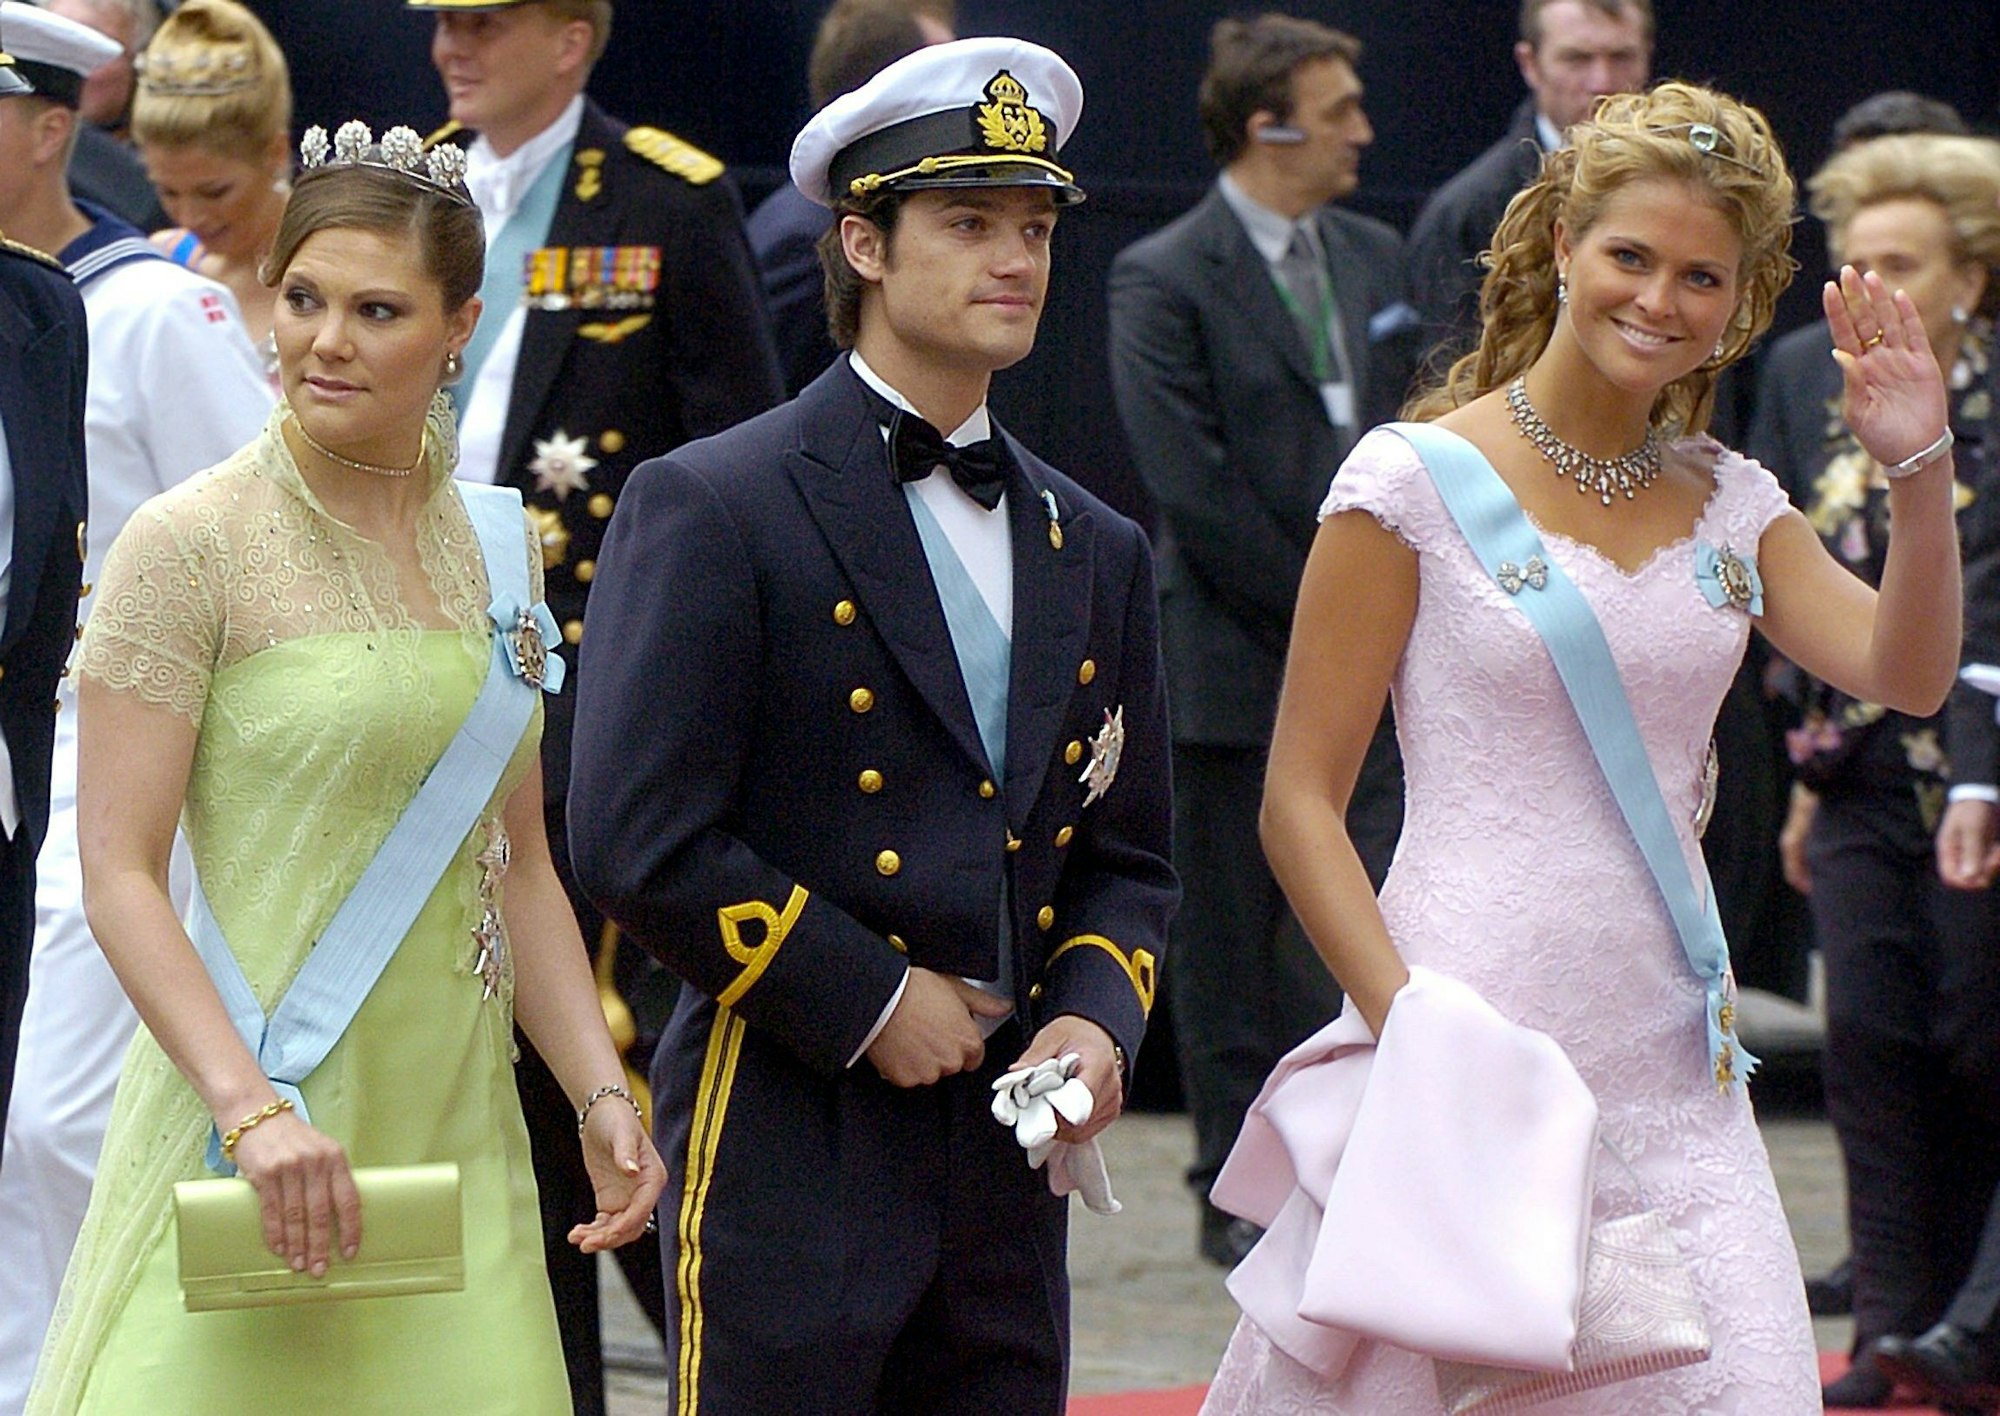 Konprinzessin Victoria von Schweden (l-r) und ihre Geschwister Prinz Carl Philip und Prinzessin Madeleine treffen am 14.05.2004 vor dem Dom in Kopenhagen zu der Trauung des dänischen Kronprinzen Frederik ein.